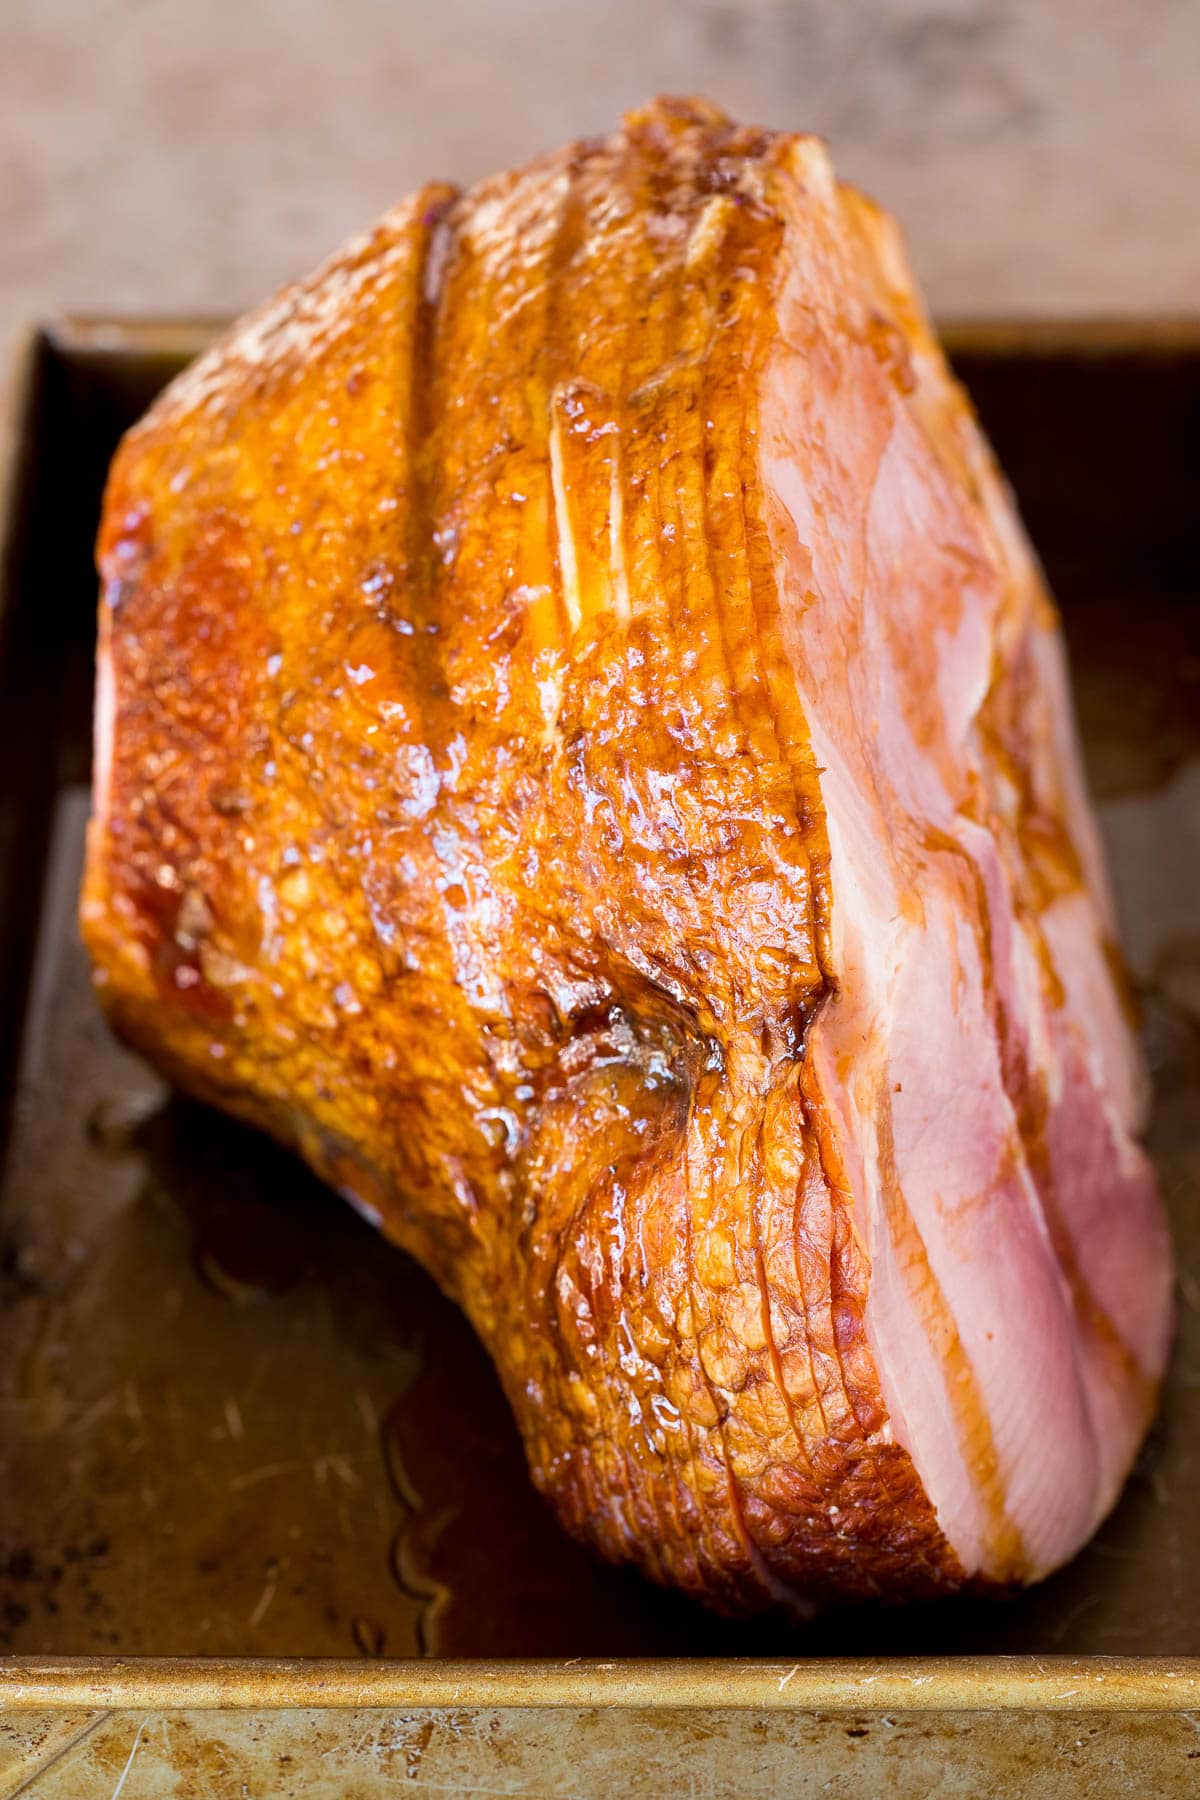 A ham coated in brown sugar glaze.